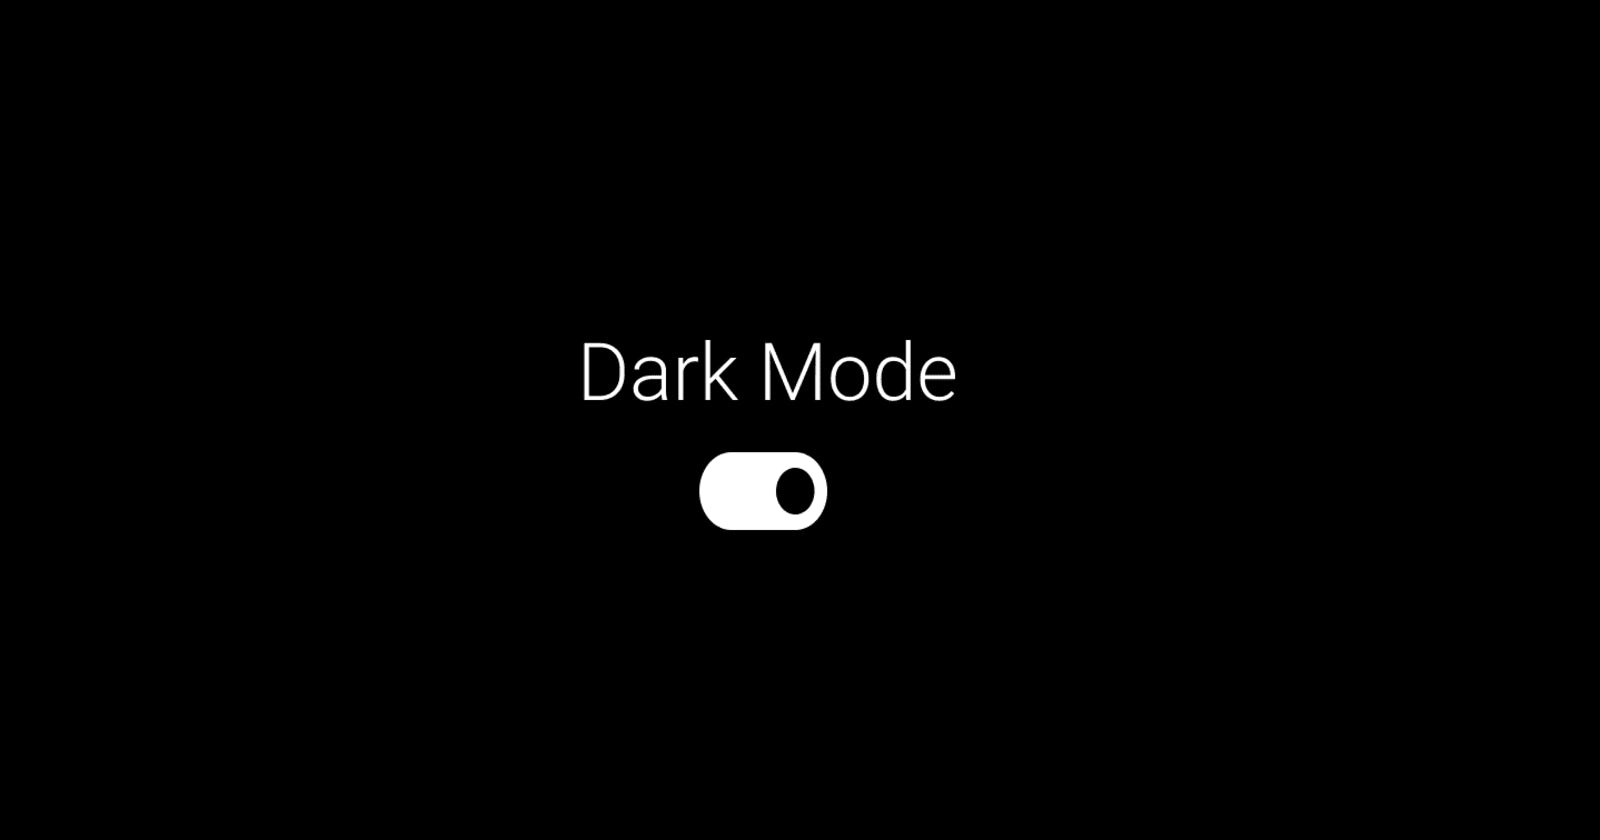 Ways websites implement dark mode